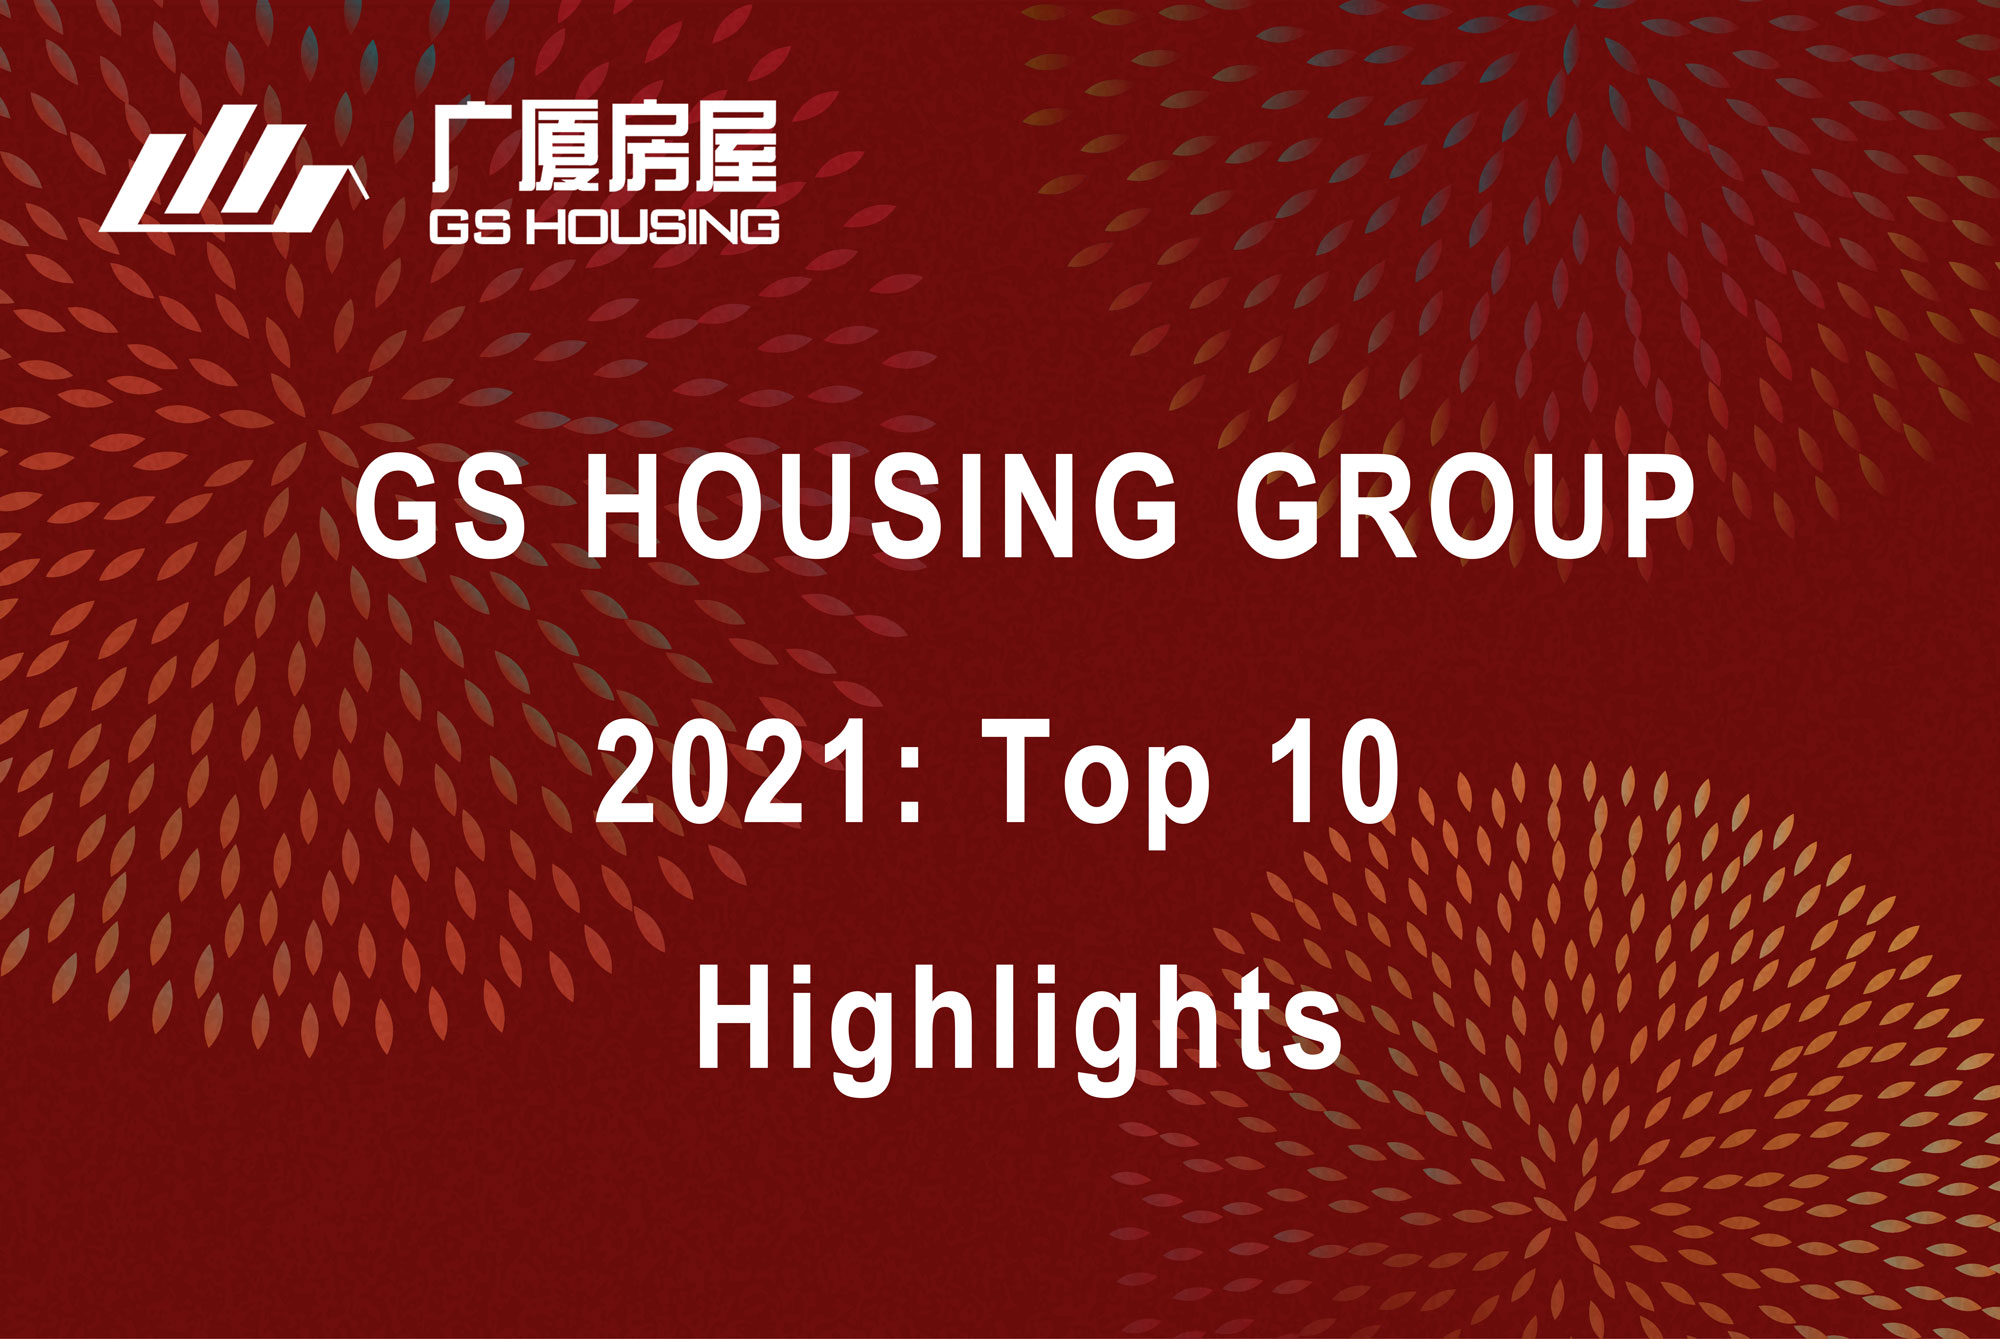 Pregledajte 10 najvažnijih događaja u 2021. u GS Housing Group